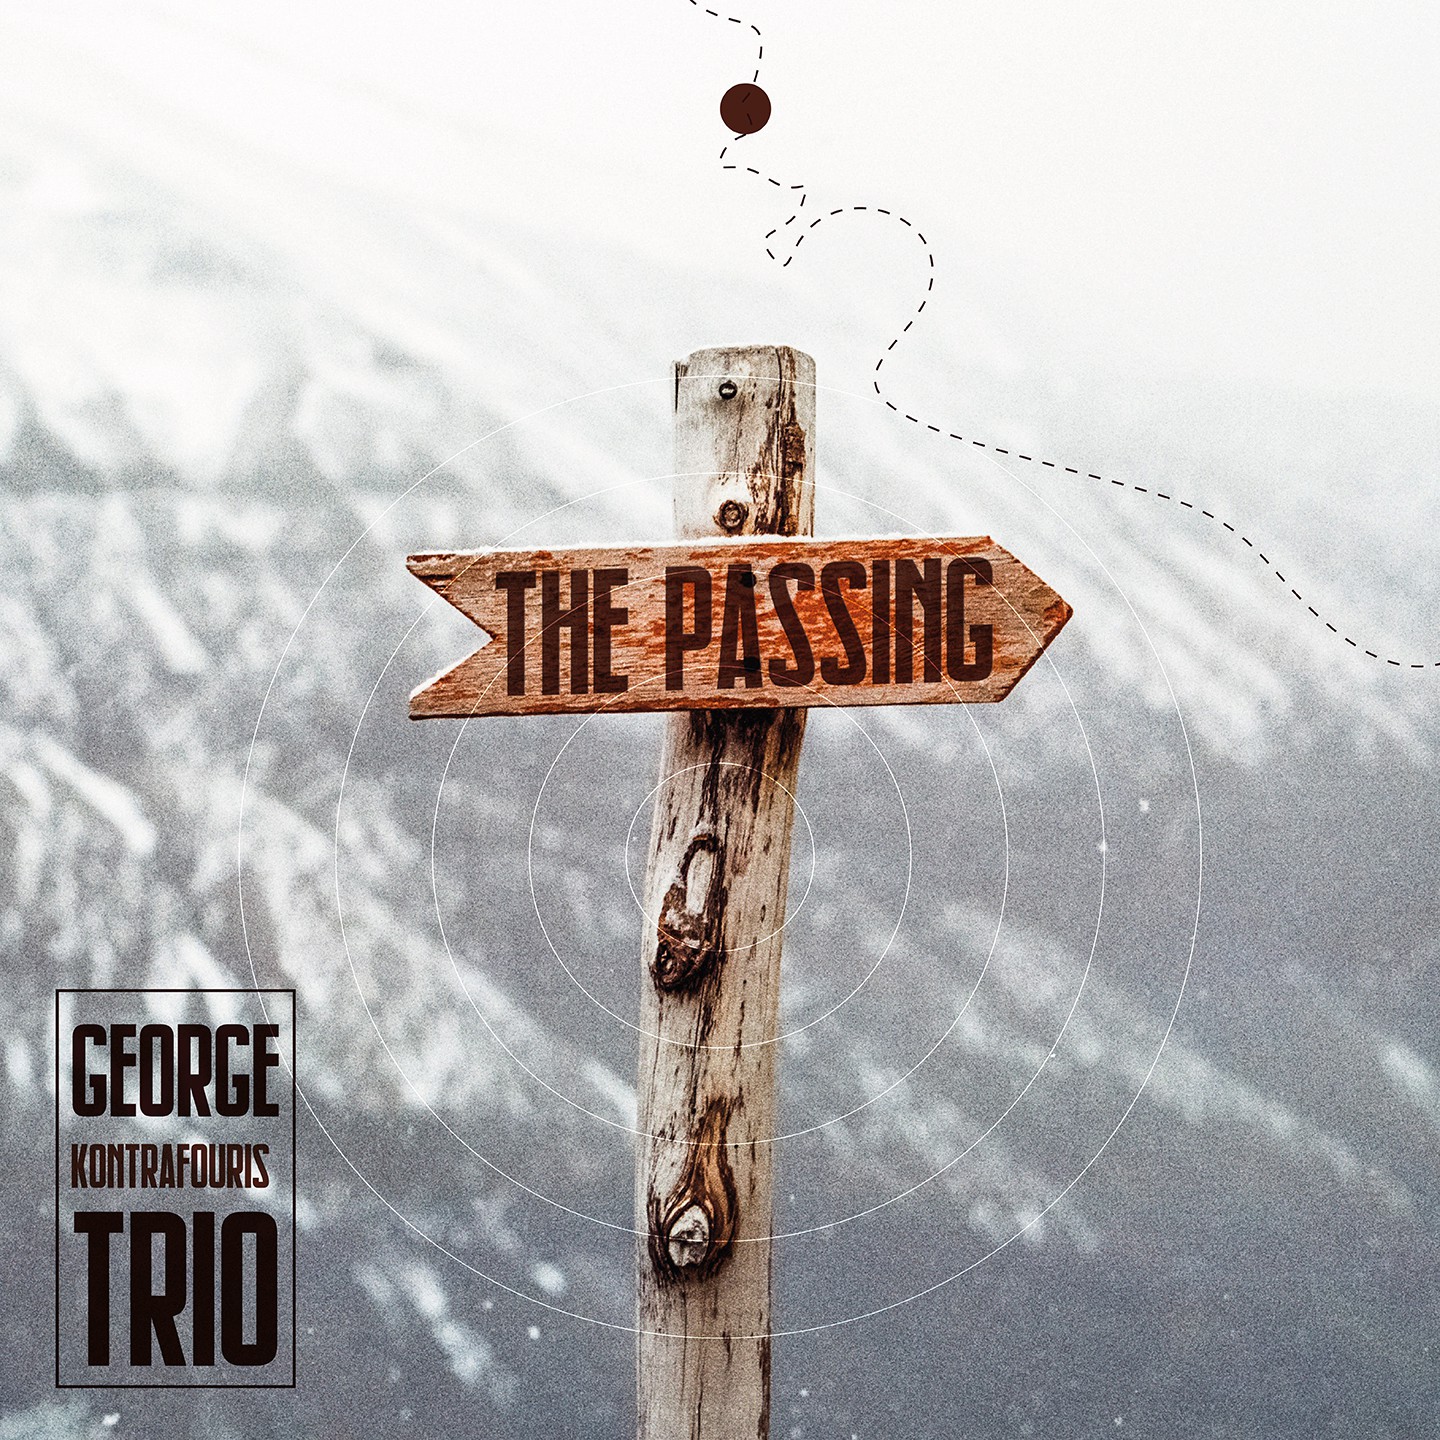 GEORGE KONTRAFOURIS TRIO-THE PASSING